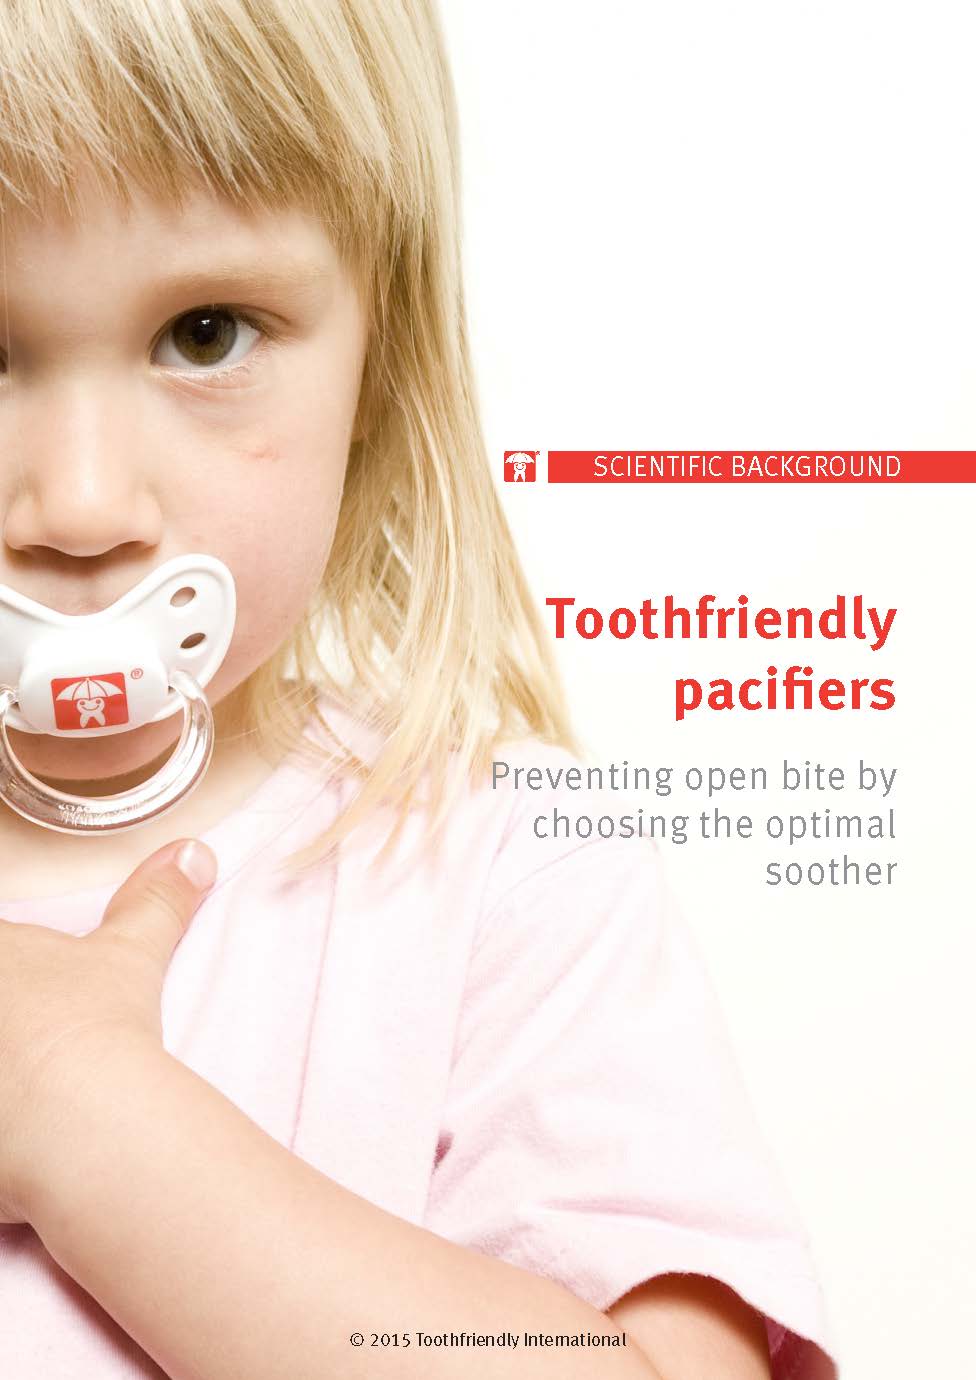 Toothfriendlypacifiers